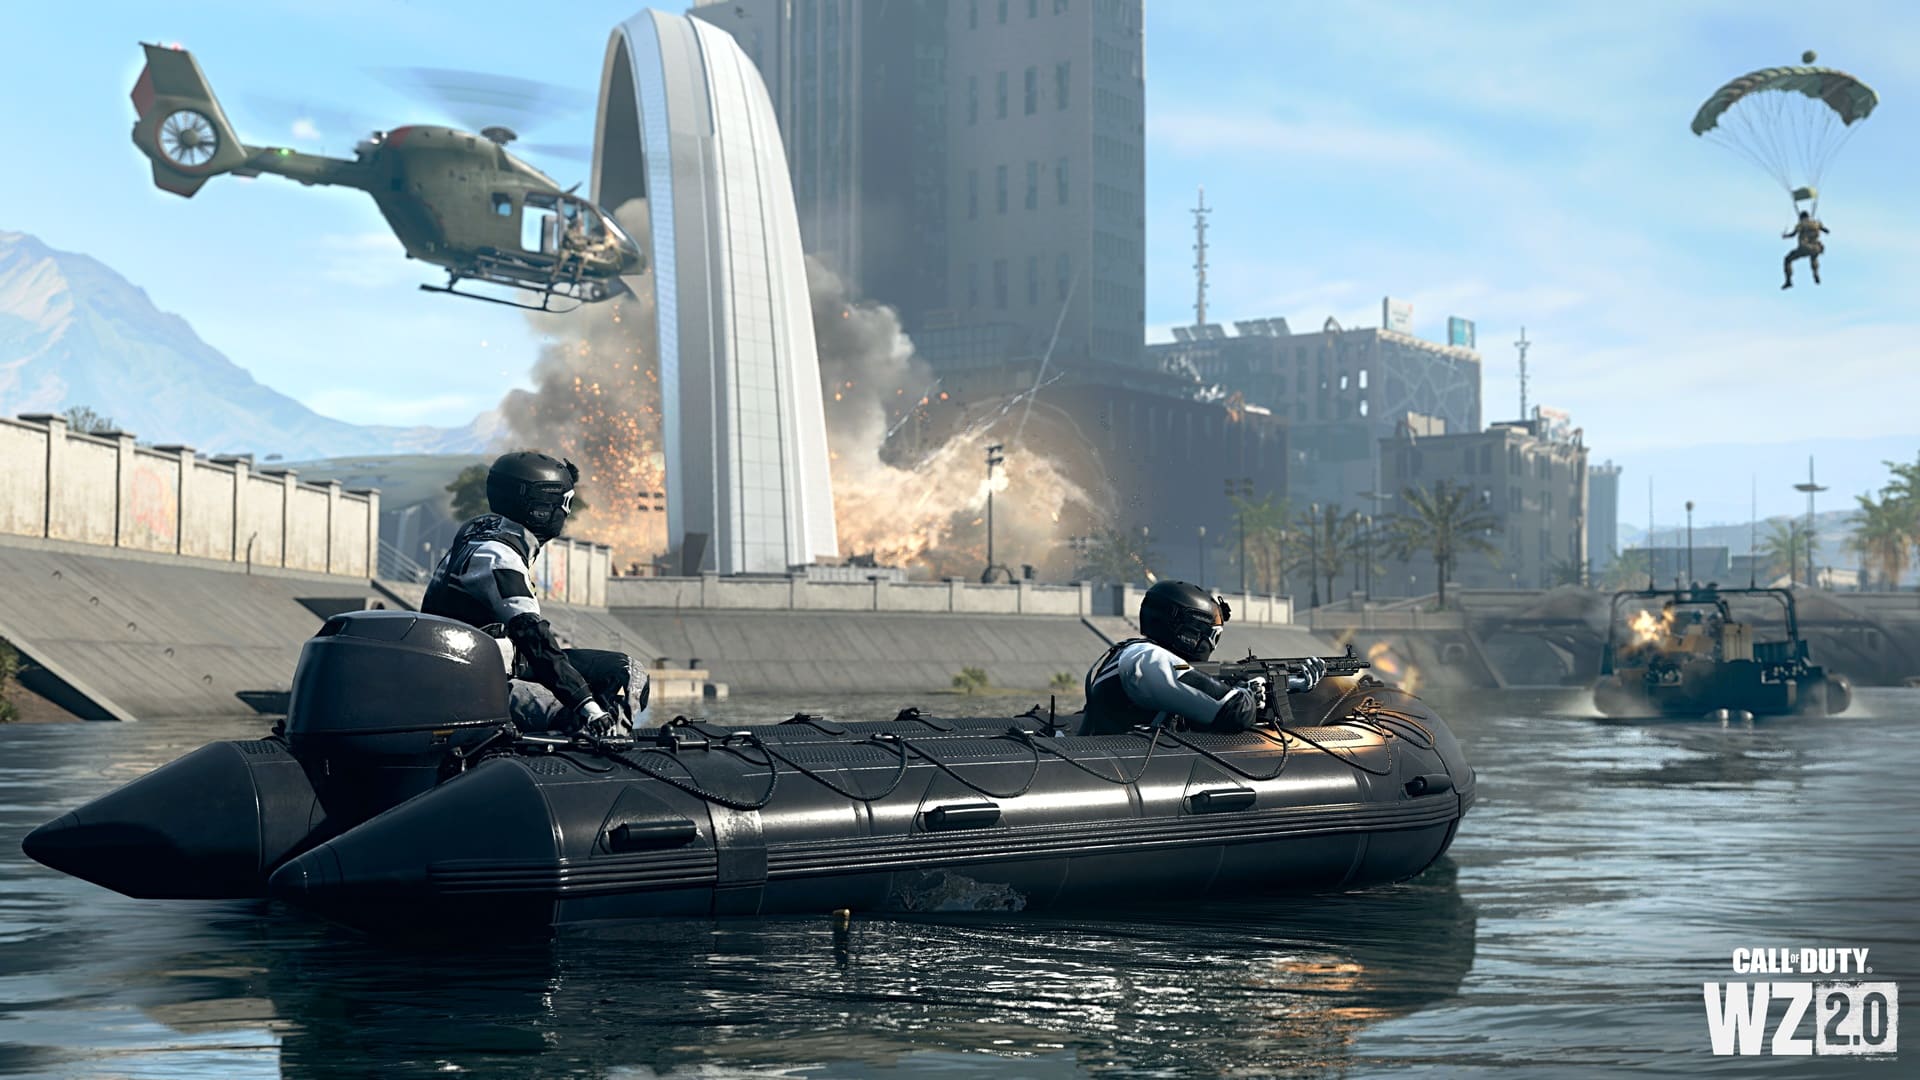 (Watergevechten zijn ook mogelijk in Warzone 2, zoals in de campagne en multiplayer, zowel in een boot als onder water)